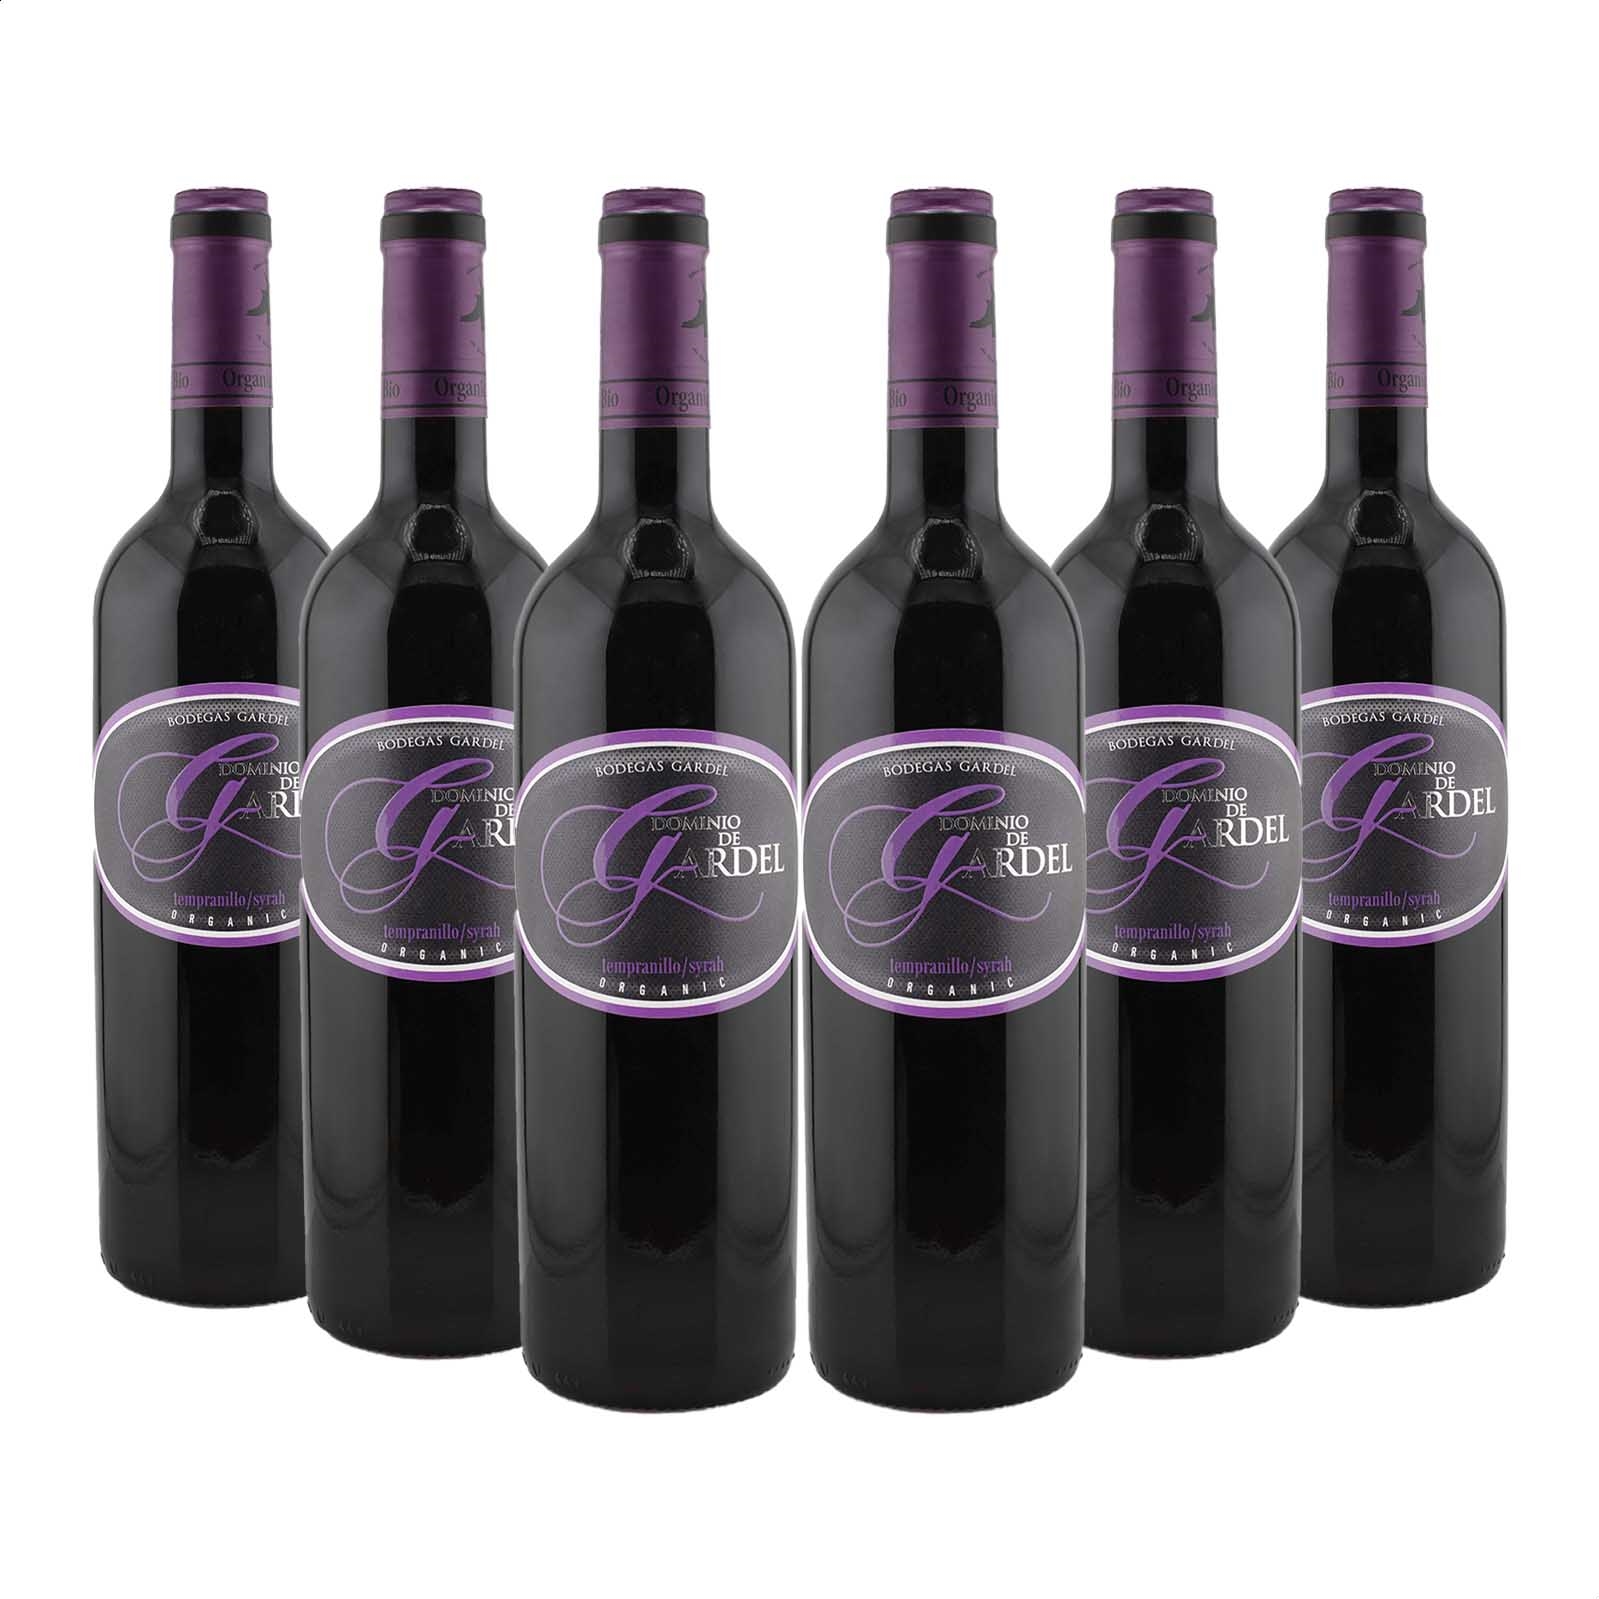 Bodegas Gardel - Dominio de Gardel vino tinto Tempranillo Syrah D.O.P. La Mancha 75cl, 6uds